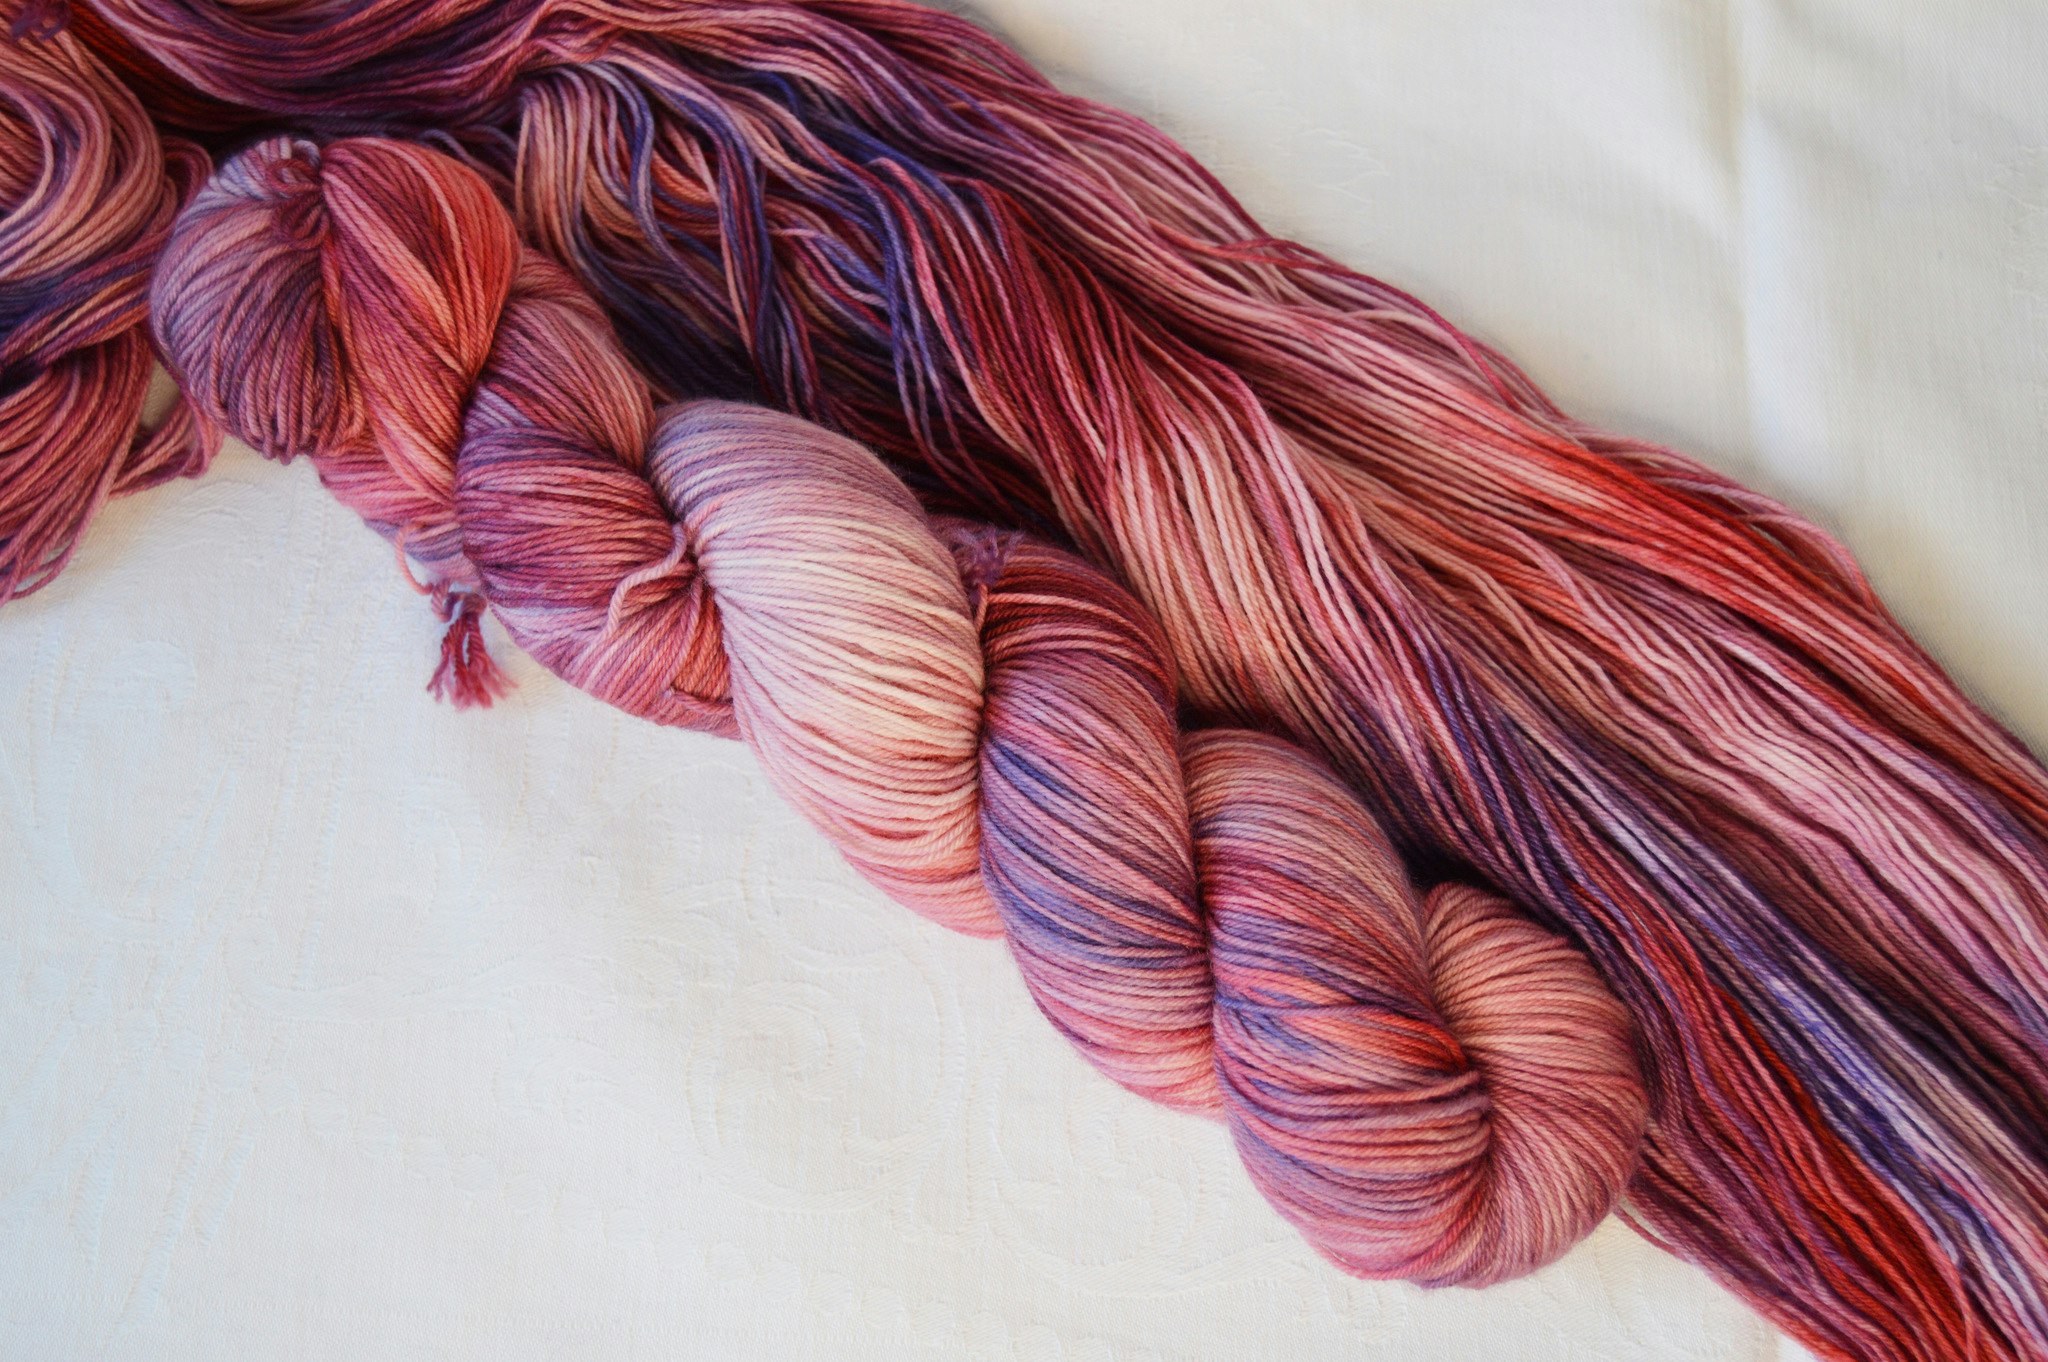 Socks är ett underbart mjukt handfärgat garn. Dessa härvor är flerfärgade i rosa, lila och blått. Detta garn passar till bl a sockor, vantar, sjalar och tröjor.